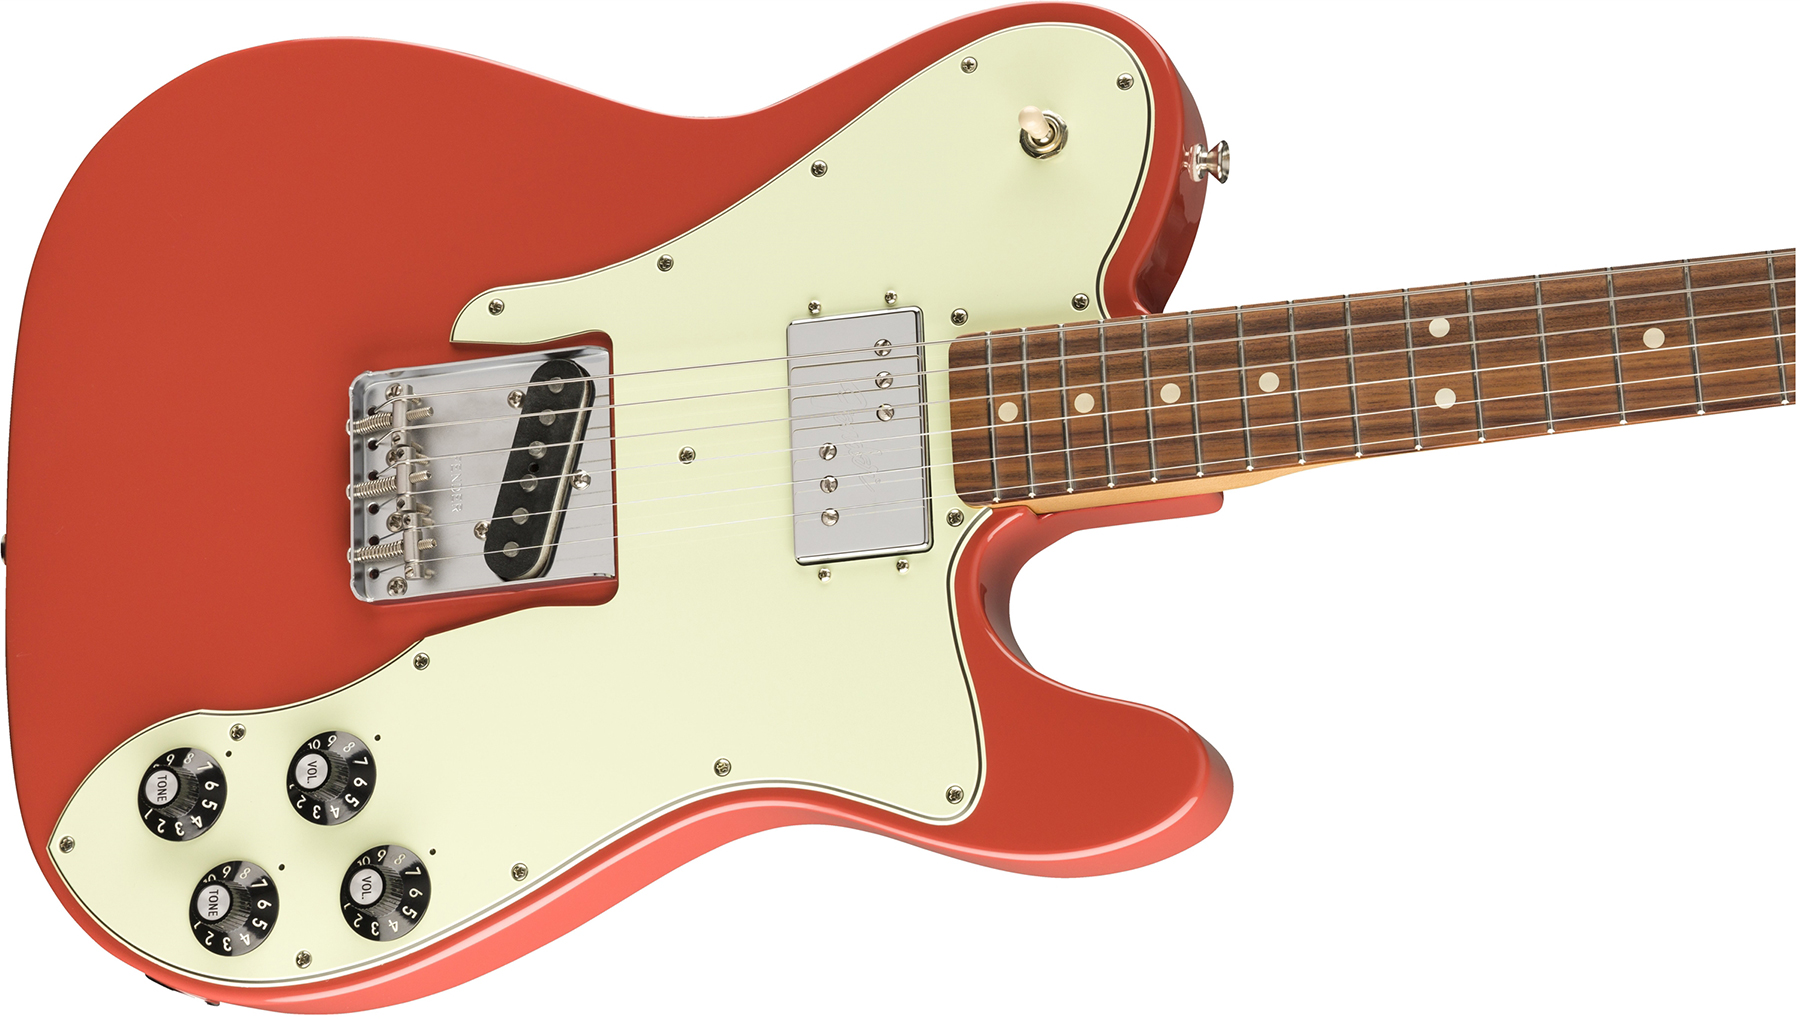 Fender Tele 70s Custom Vintera Vintage Mex Hh Pf - Fiesta Red - Guitarra eléctrica con forma de tel - Variation 2